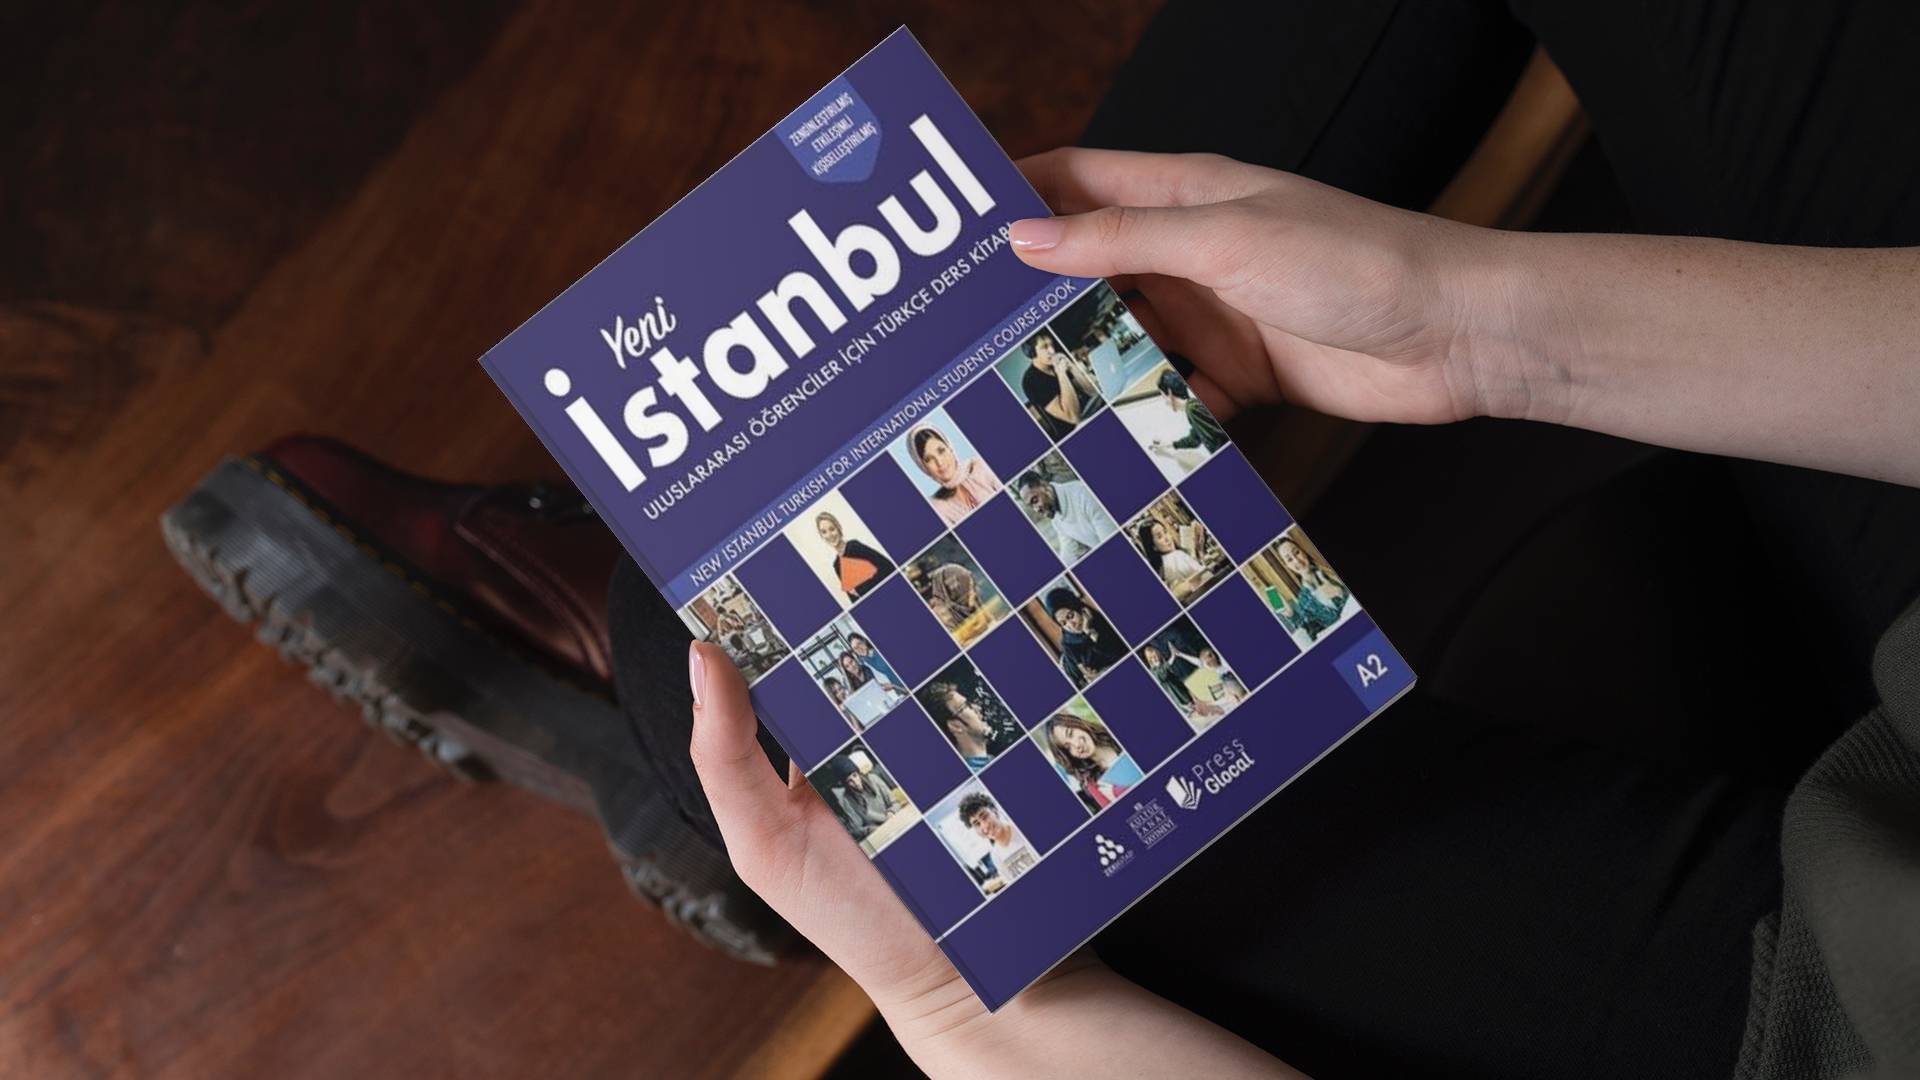 خرید کتاب زبان ترکی استانبولی | فروشگاه اینترنتی کتاب زبان | Yeni Istanbul A2 | کتاب ینی استانبول A2